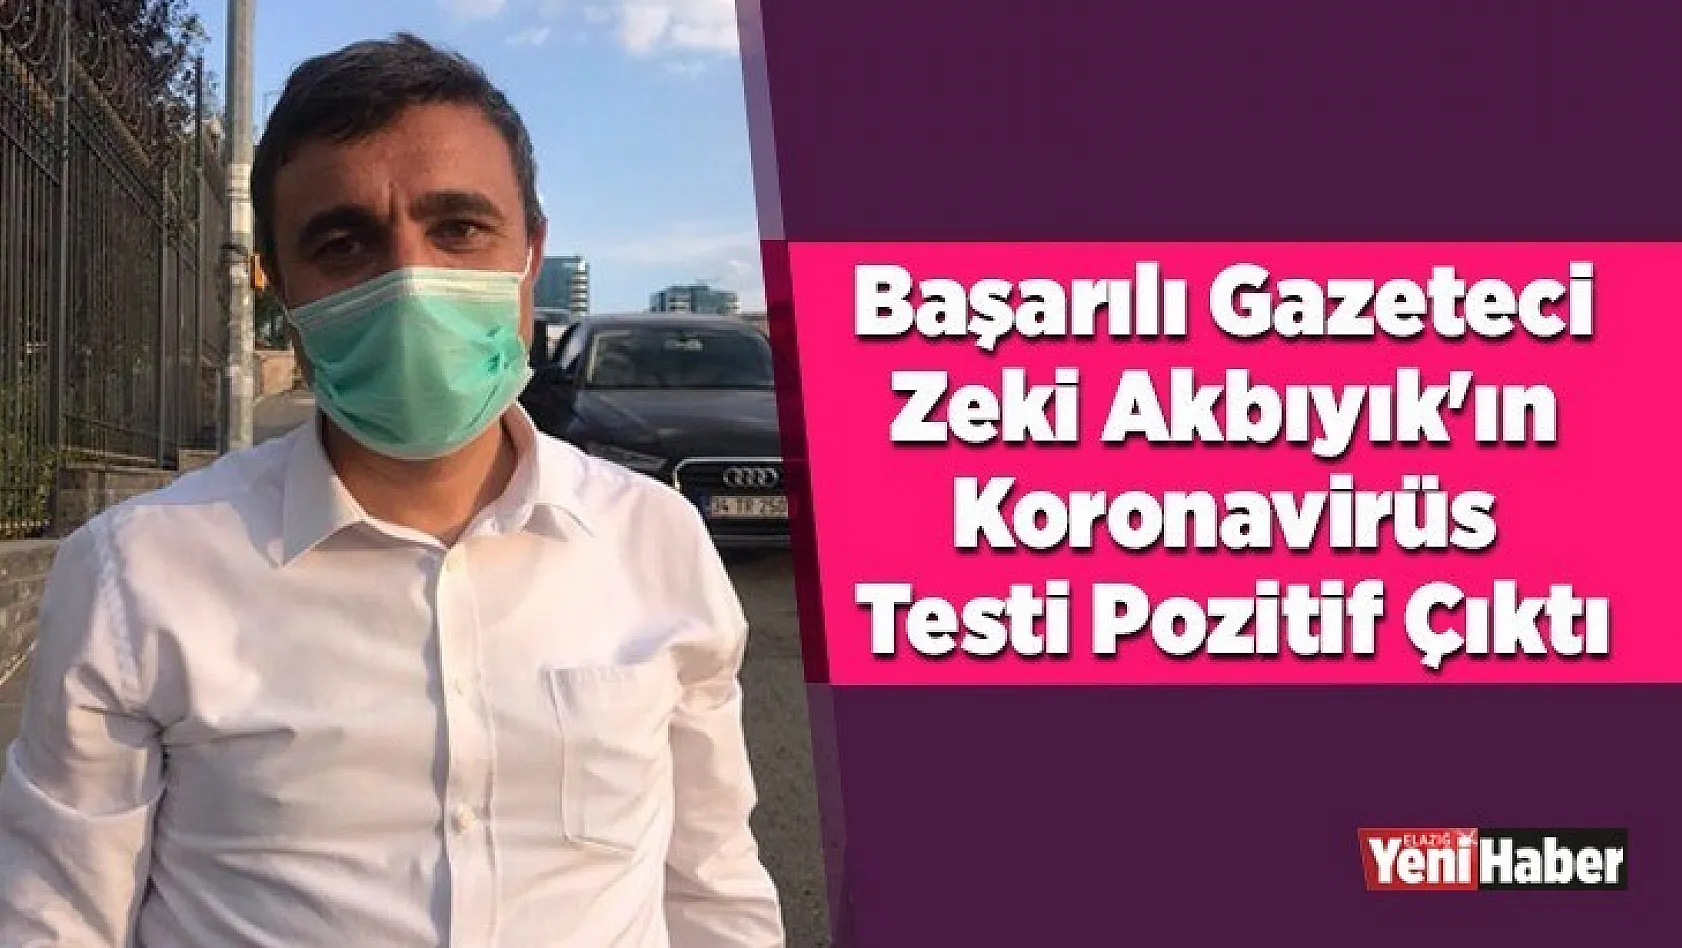 Başarılı Gazeteci Akbıyık'ın Koronavirüs Testi Pozitif Çıktı